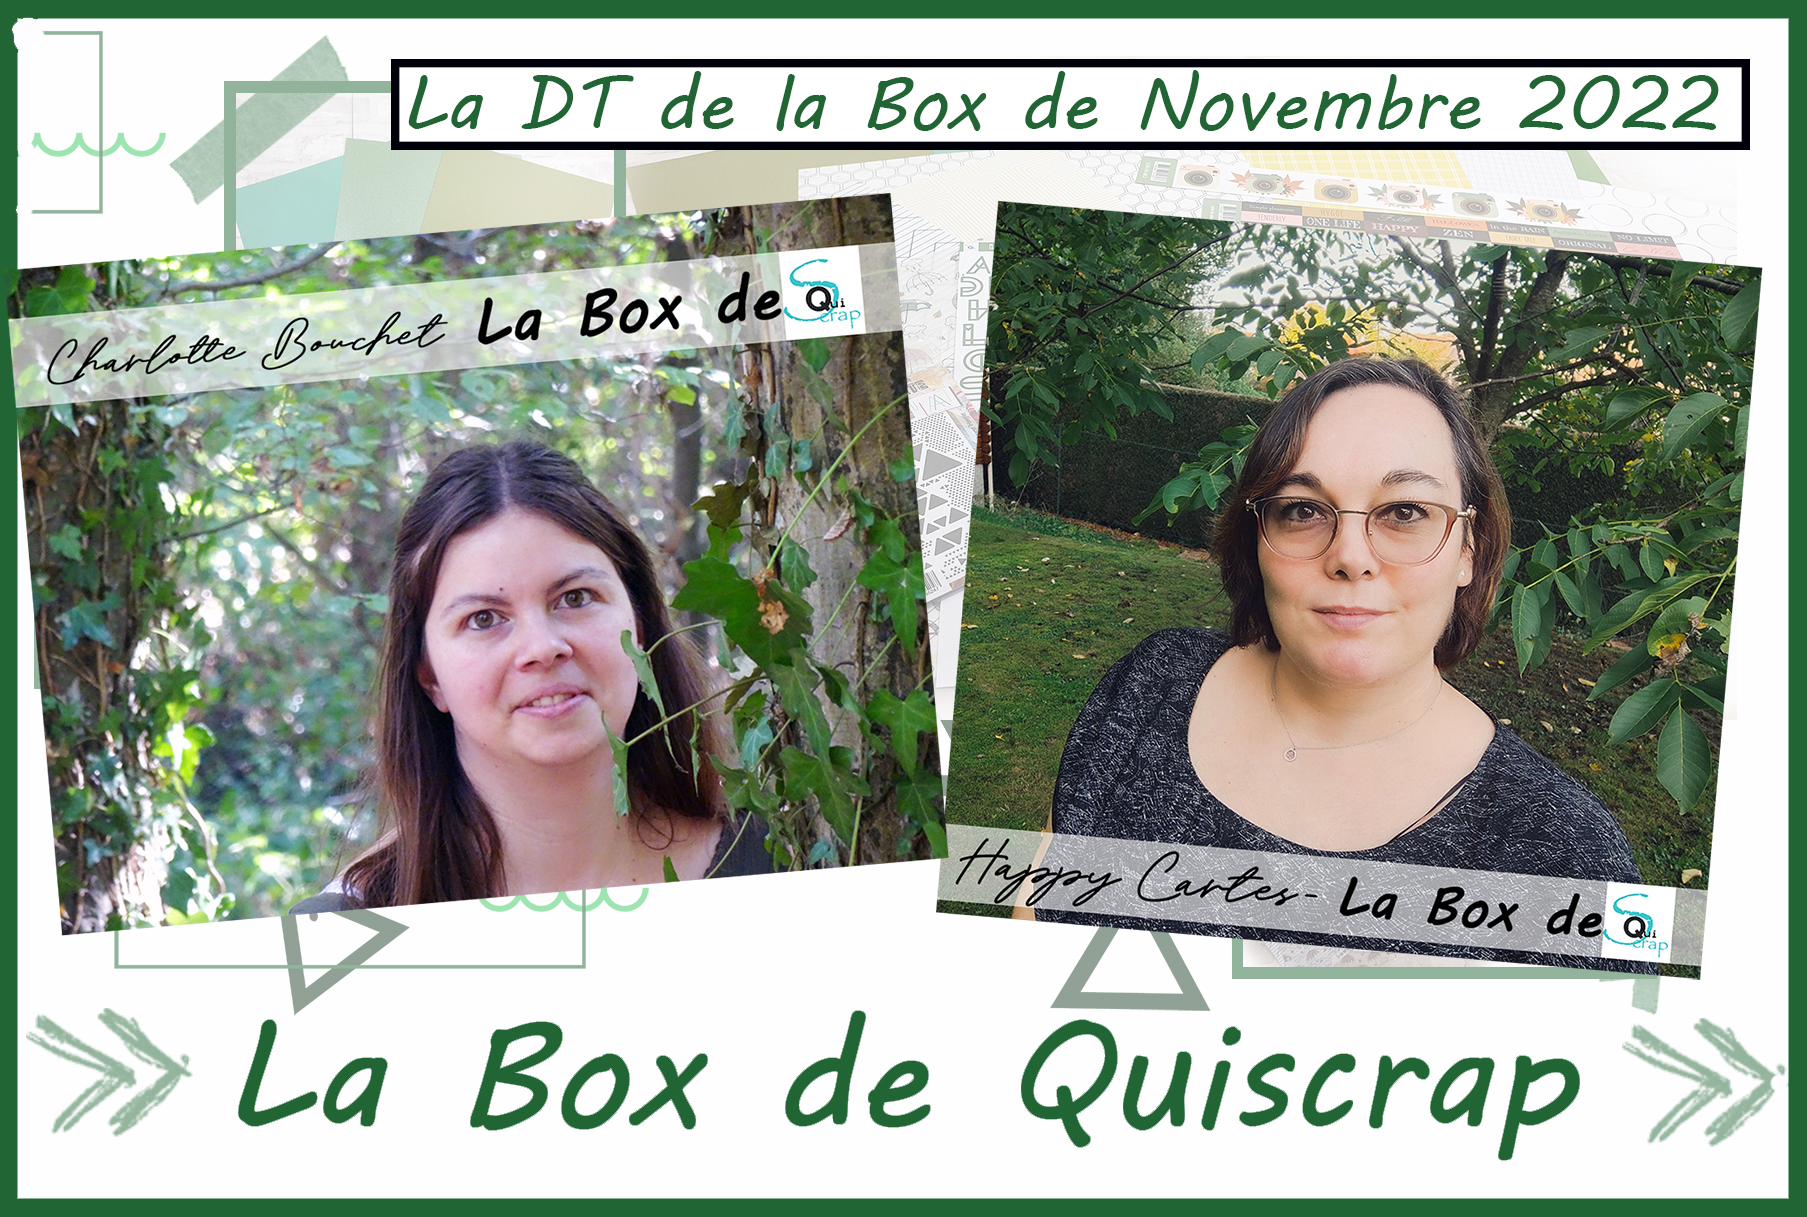 You are currently viewing Les Invitées Créatives des Box de Novembre et Décembre 2022 sont Charlotte Bouchet et Karine de Happy Cartes